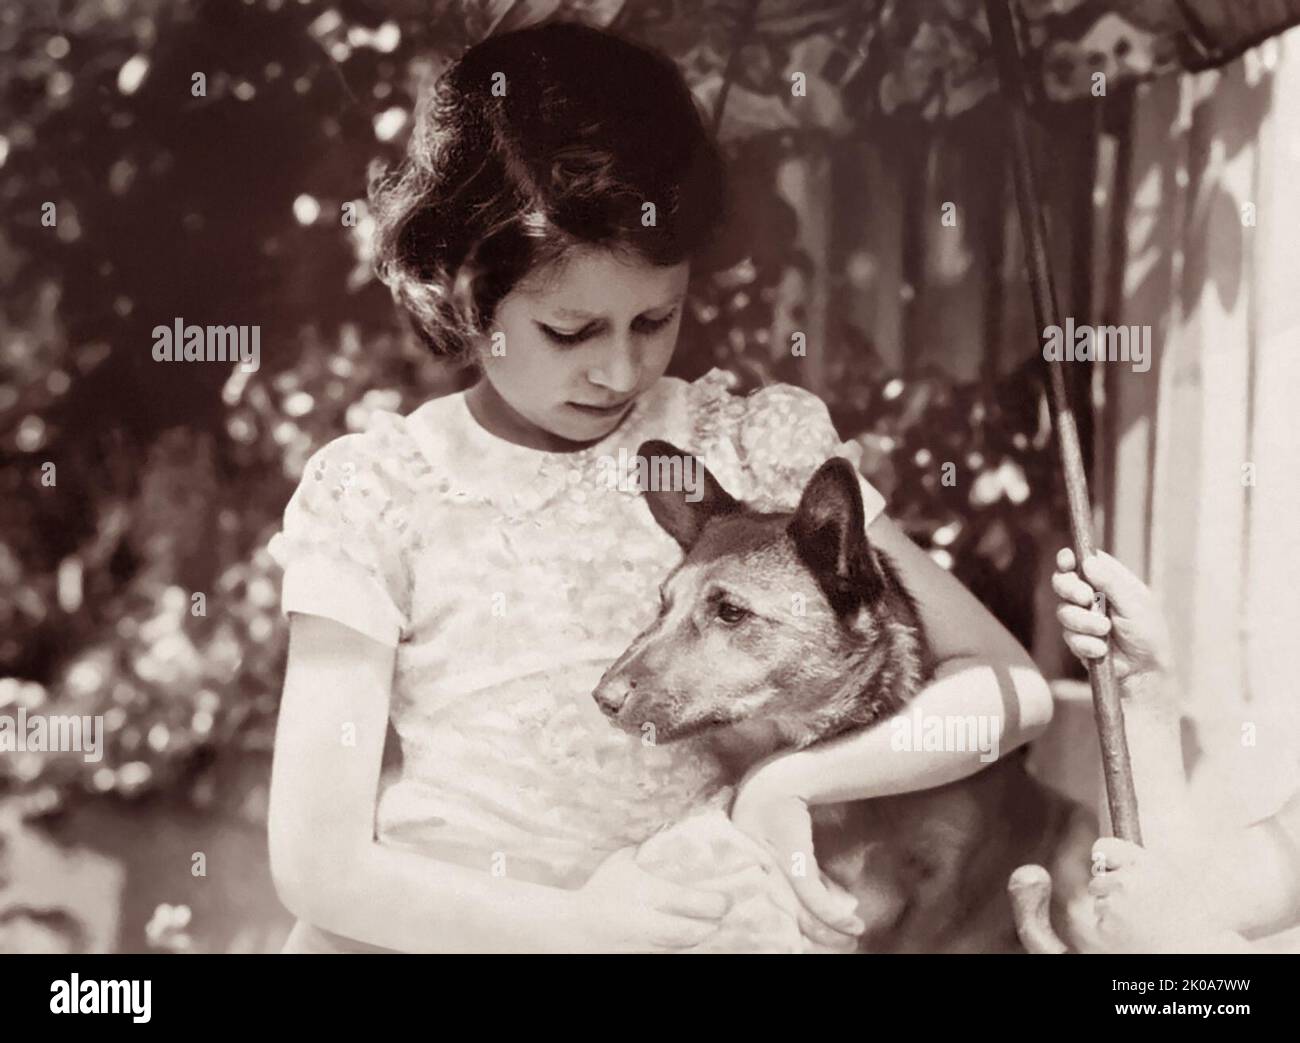 La joven princesa Elizabeth (c1938) con su mascota corgi, una raza de perros galeses que la futura reina amaría mucho a lo largo de su vida. (REINO UNIDO) Foto de stock